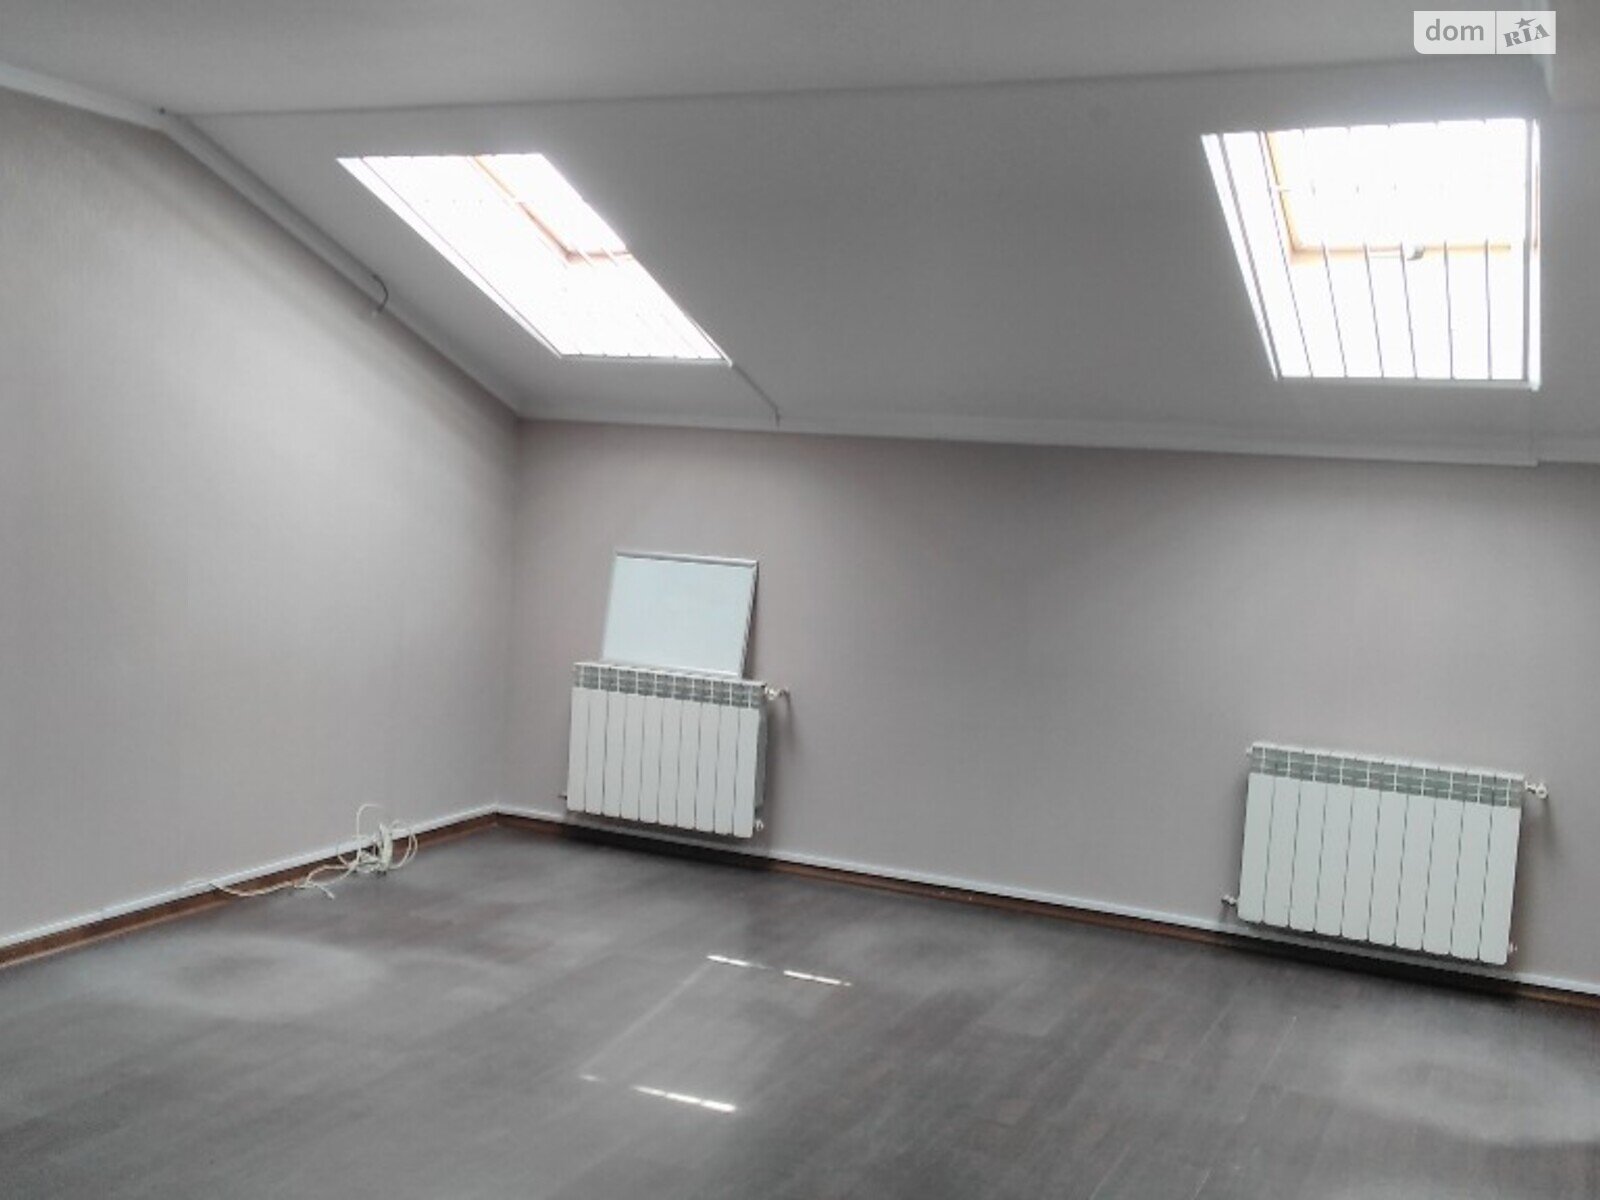 Аренда офисного помещения в Виннице, Академика Янгеля улица 14, помещений - 2, этаж - 2 фото 1